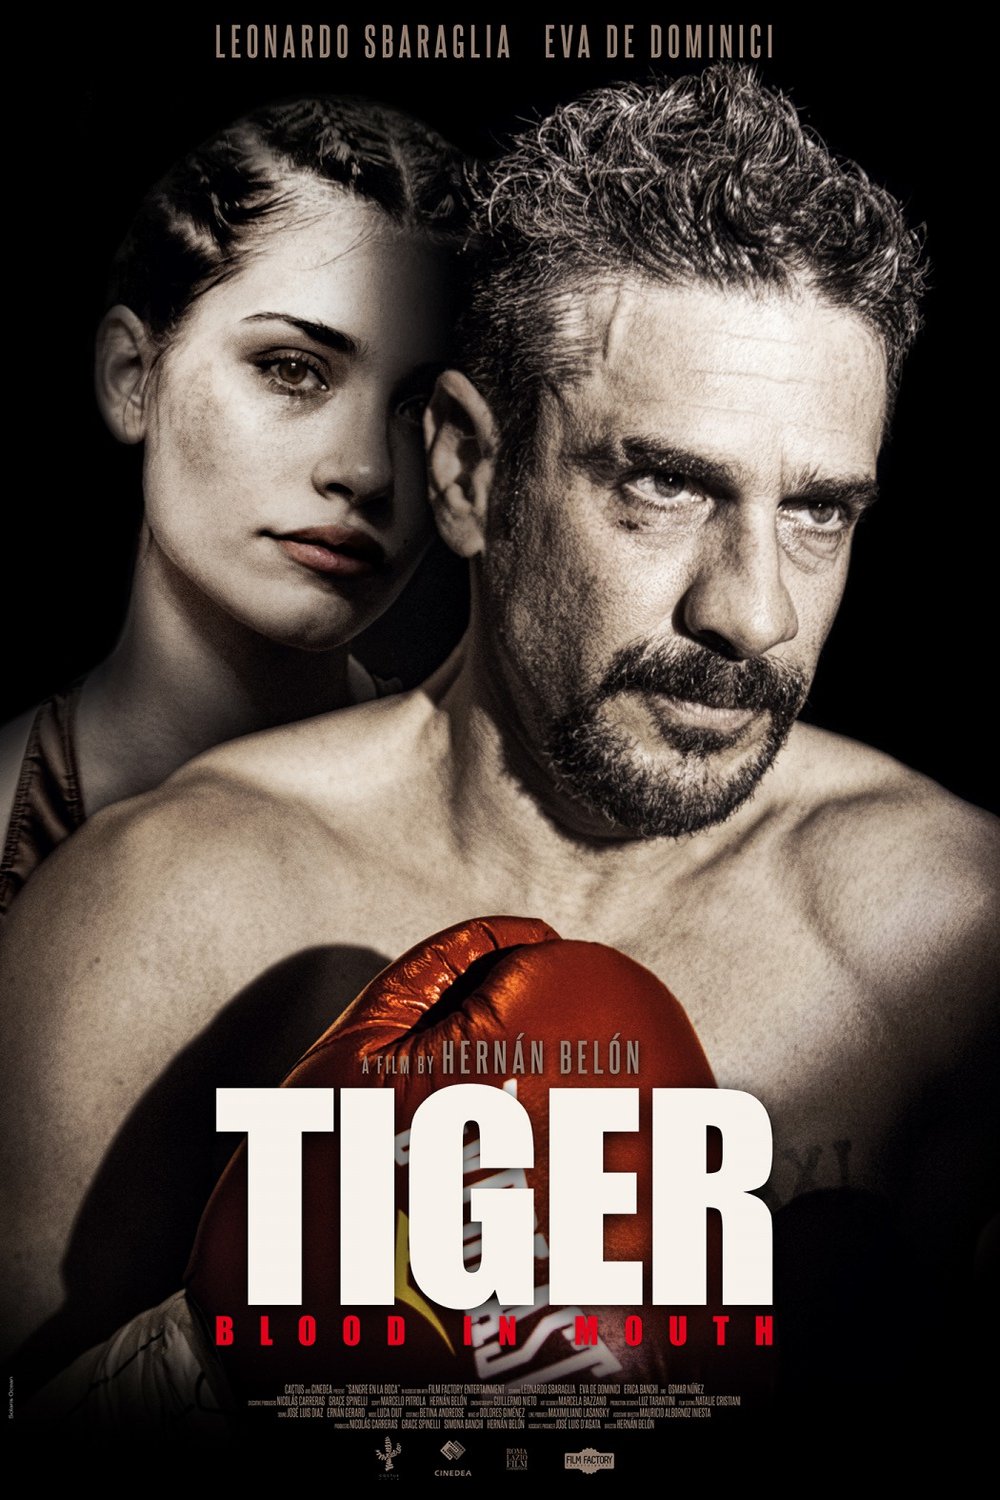 L'affiche originale du film Tiger: Blood in Mouth en espagnol